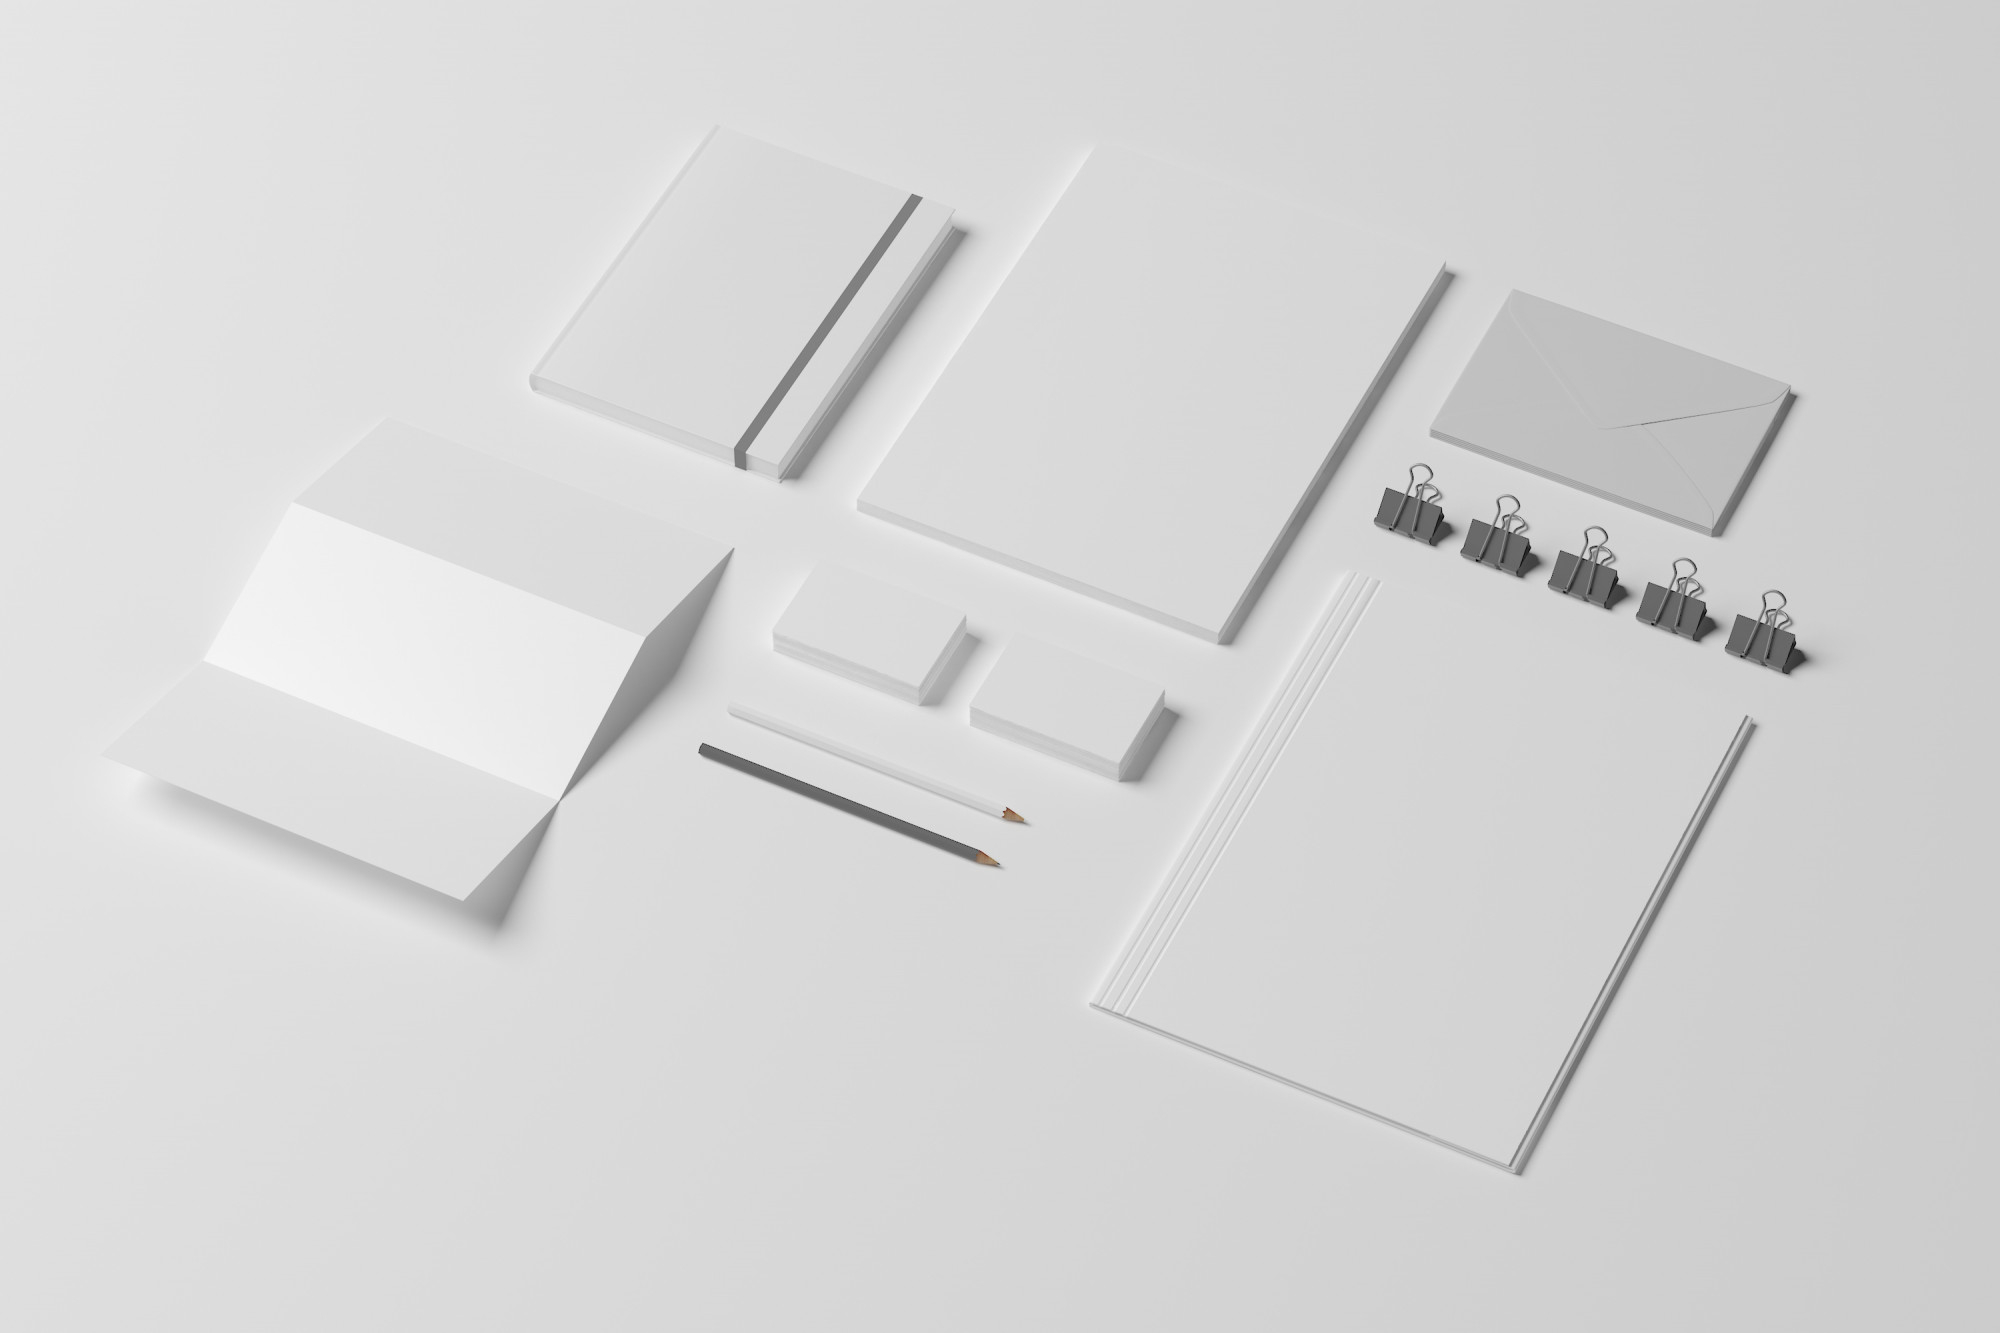 blank-identity-stationery-set-isolated-white